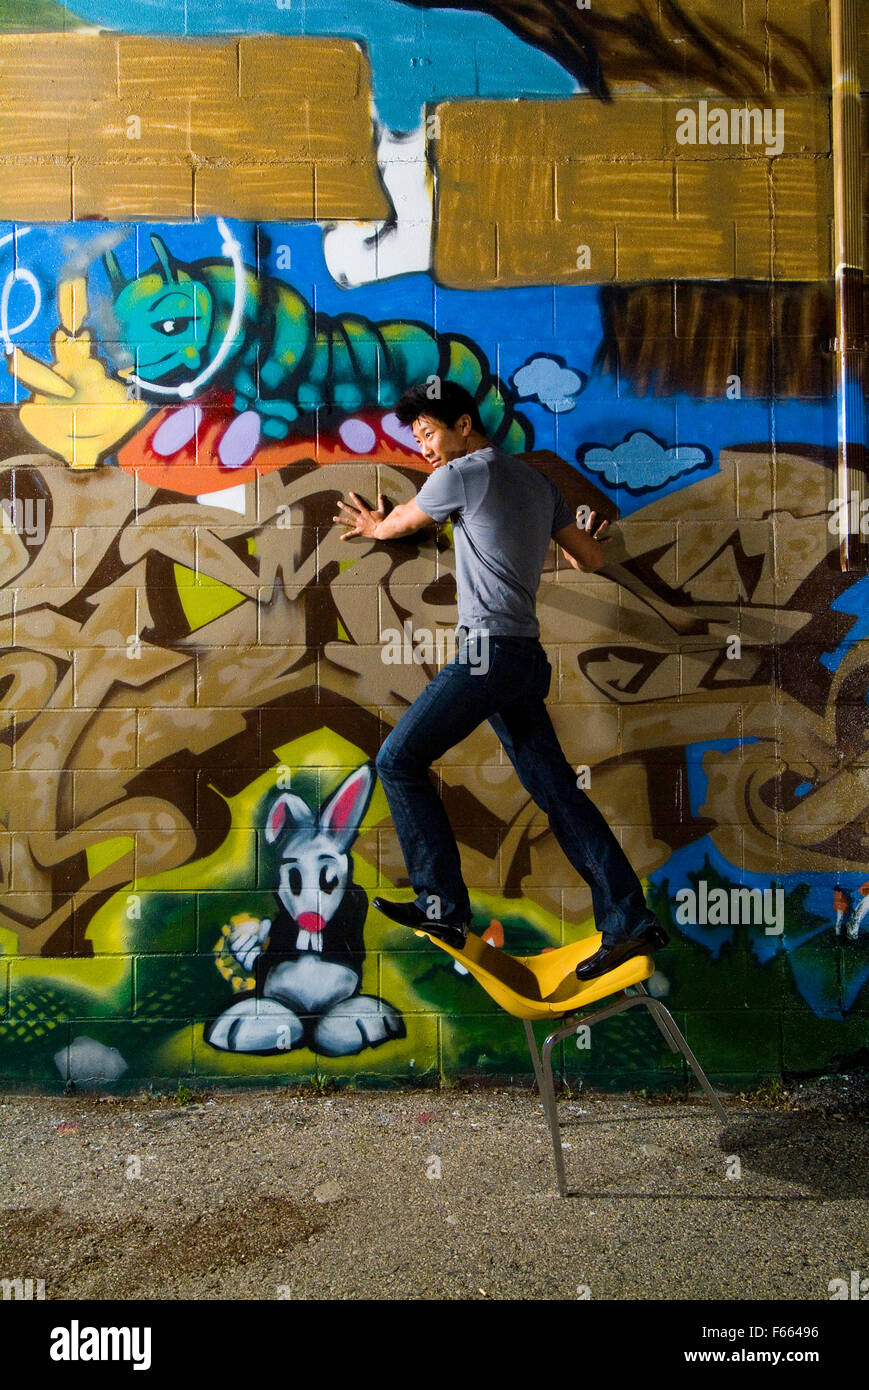 Asiatischer Mann stehend auf einem Stuhl gegen die Wand, dass graffitied wurde. ist ein Spaß und casual Bild, er treibt den Stuhl über. Stockfoto